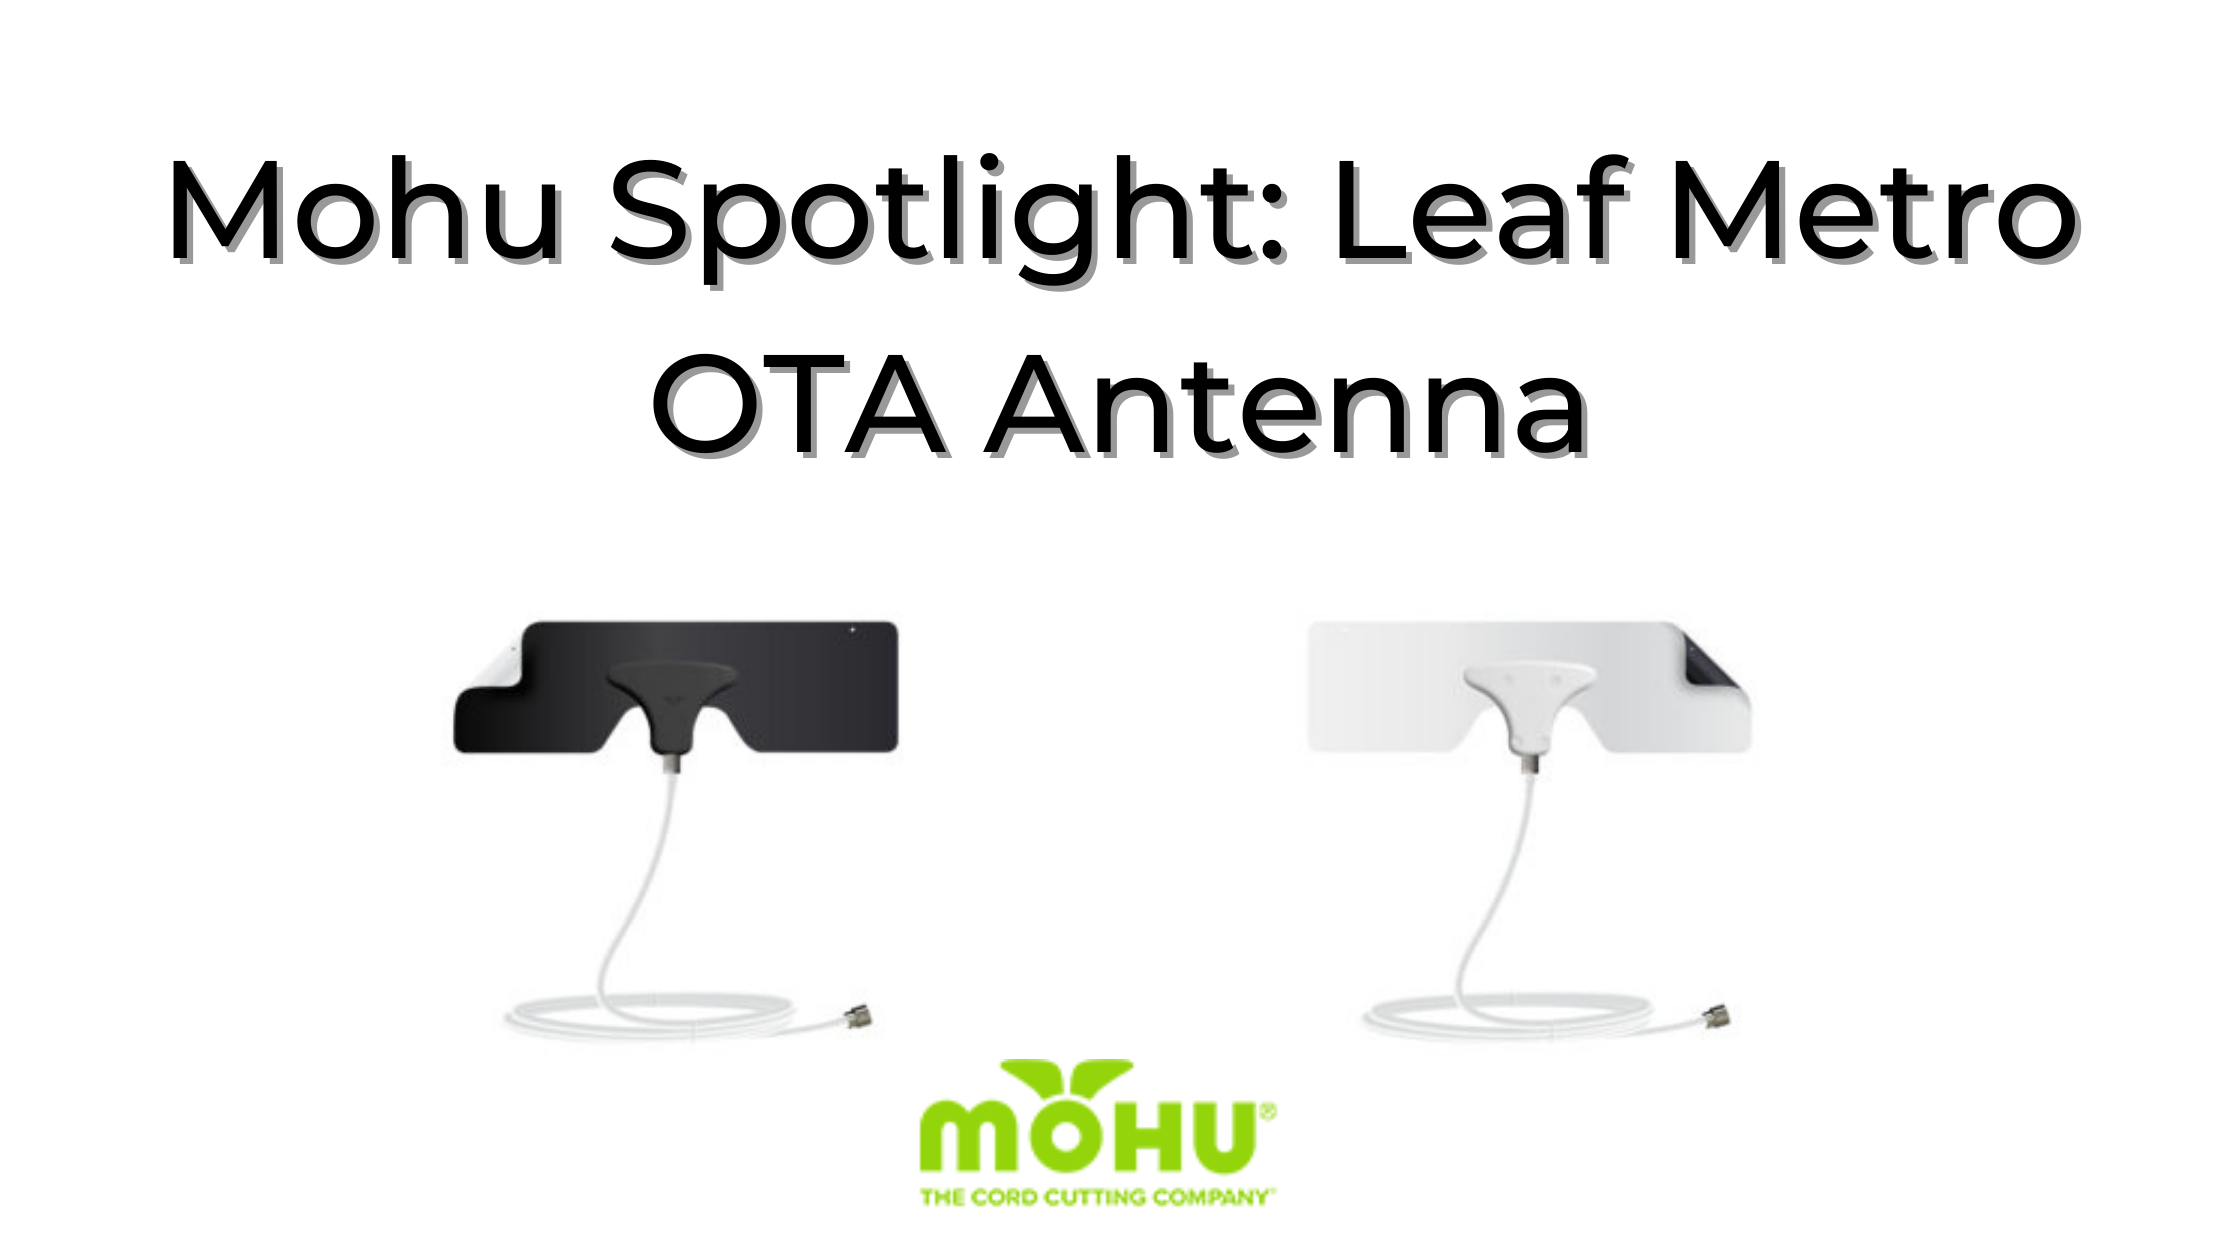 Mohu Metro Antenna in black and white, Mohu Spotlight: Leaf Metro OTA Antenna